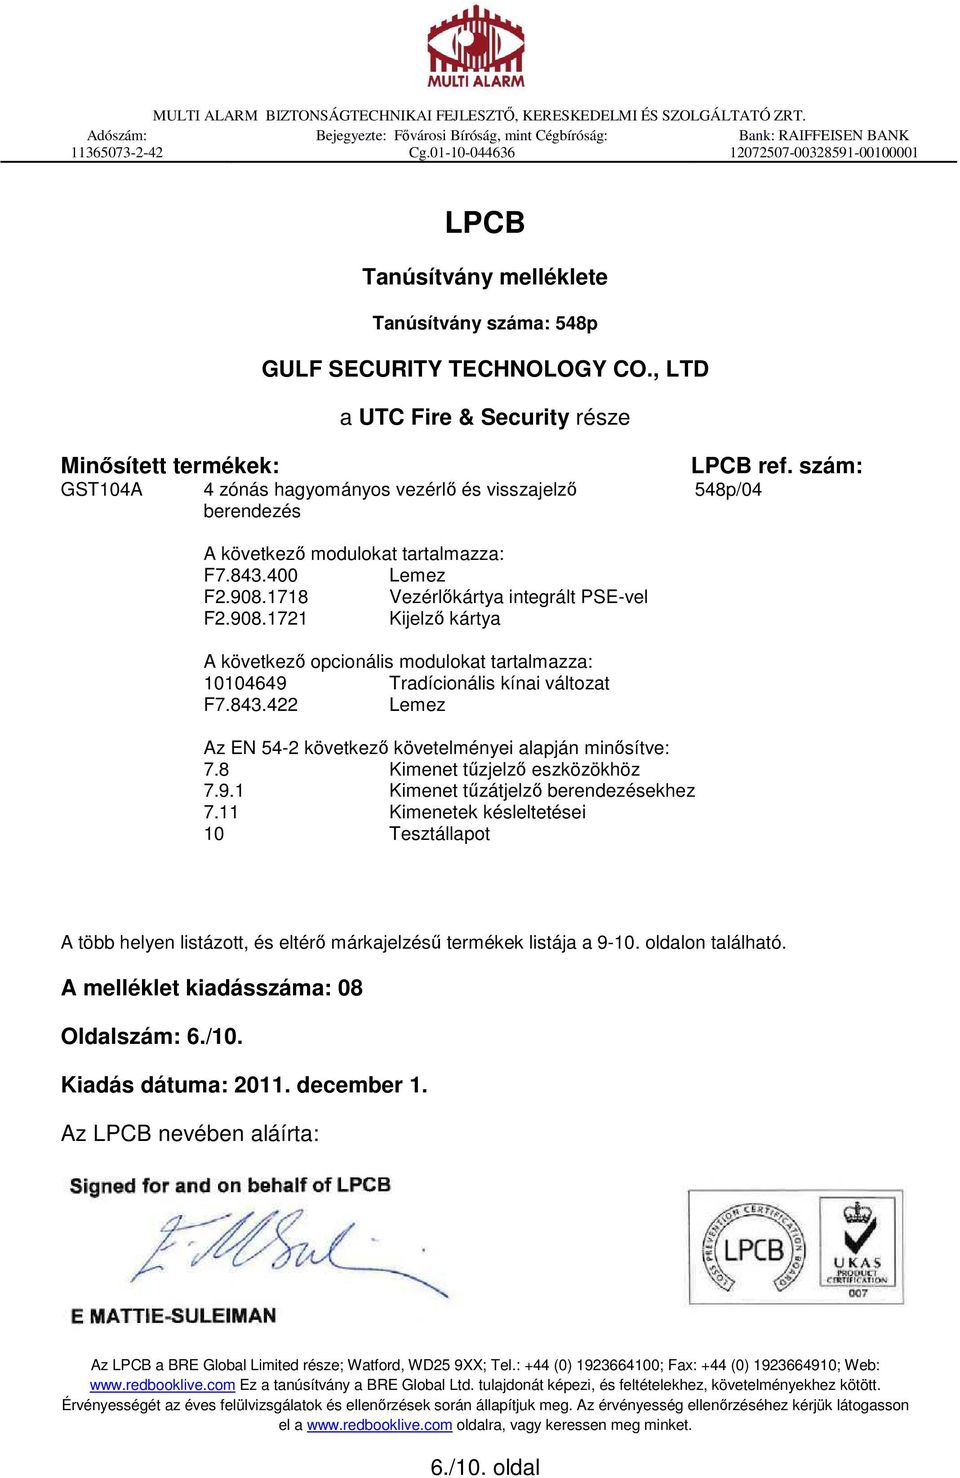 , LTD a UTC Fire & Security része Minősített termékek: GST104A 4 zónás hagyományos vezérlő és visszajelző berendezés LPCB ref. szám: 548p/04 A következő modulokat tartalmazza: F7.843.400 Lemez F2.908.